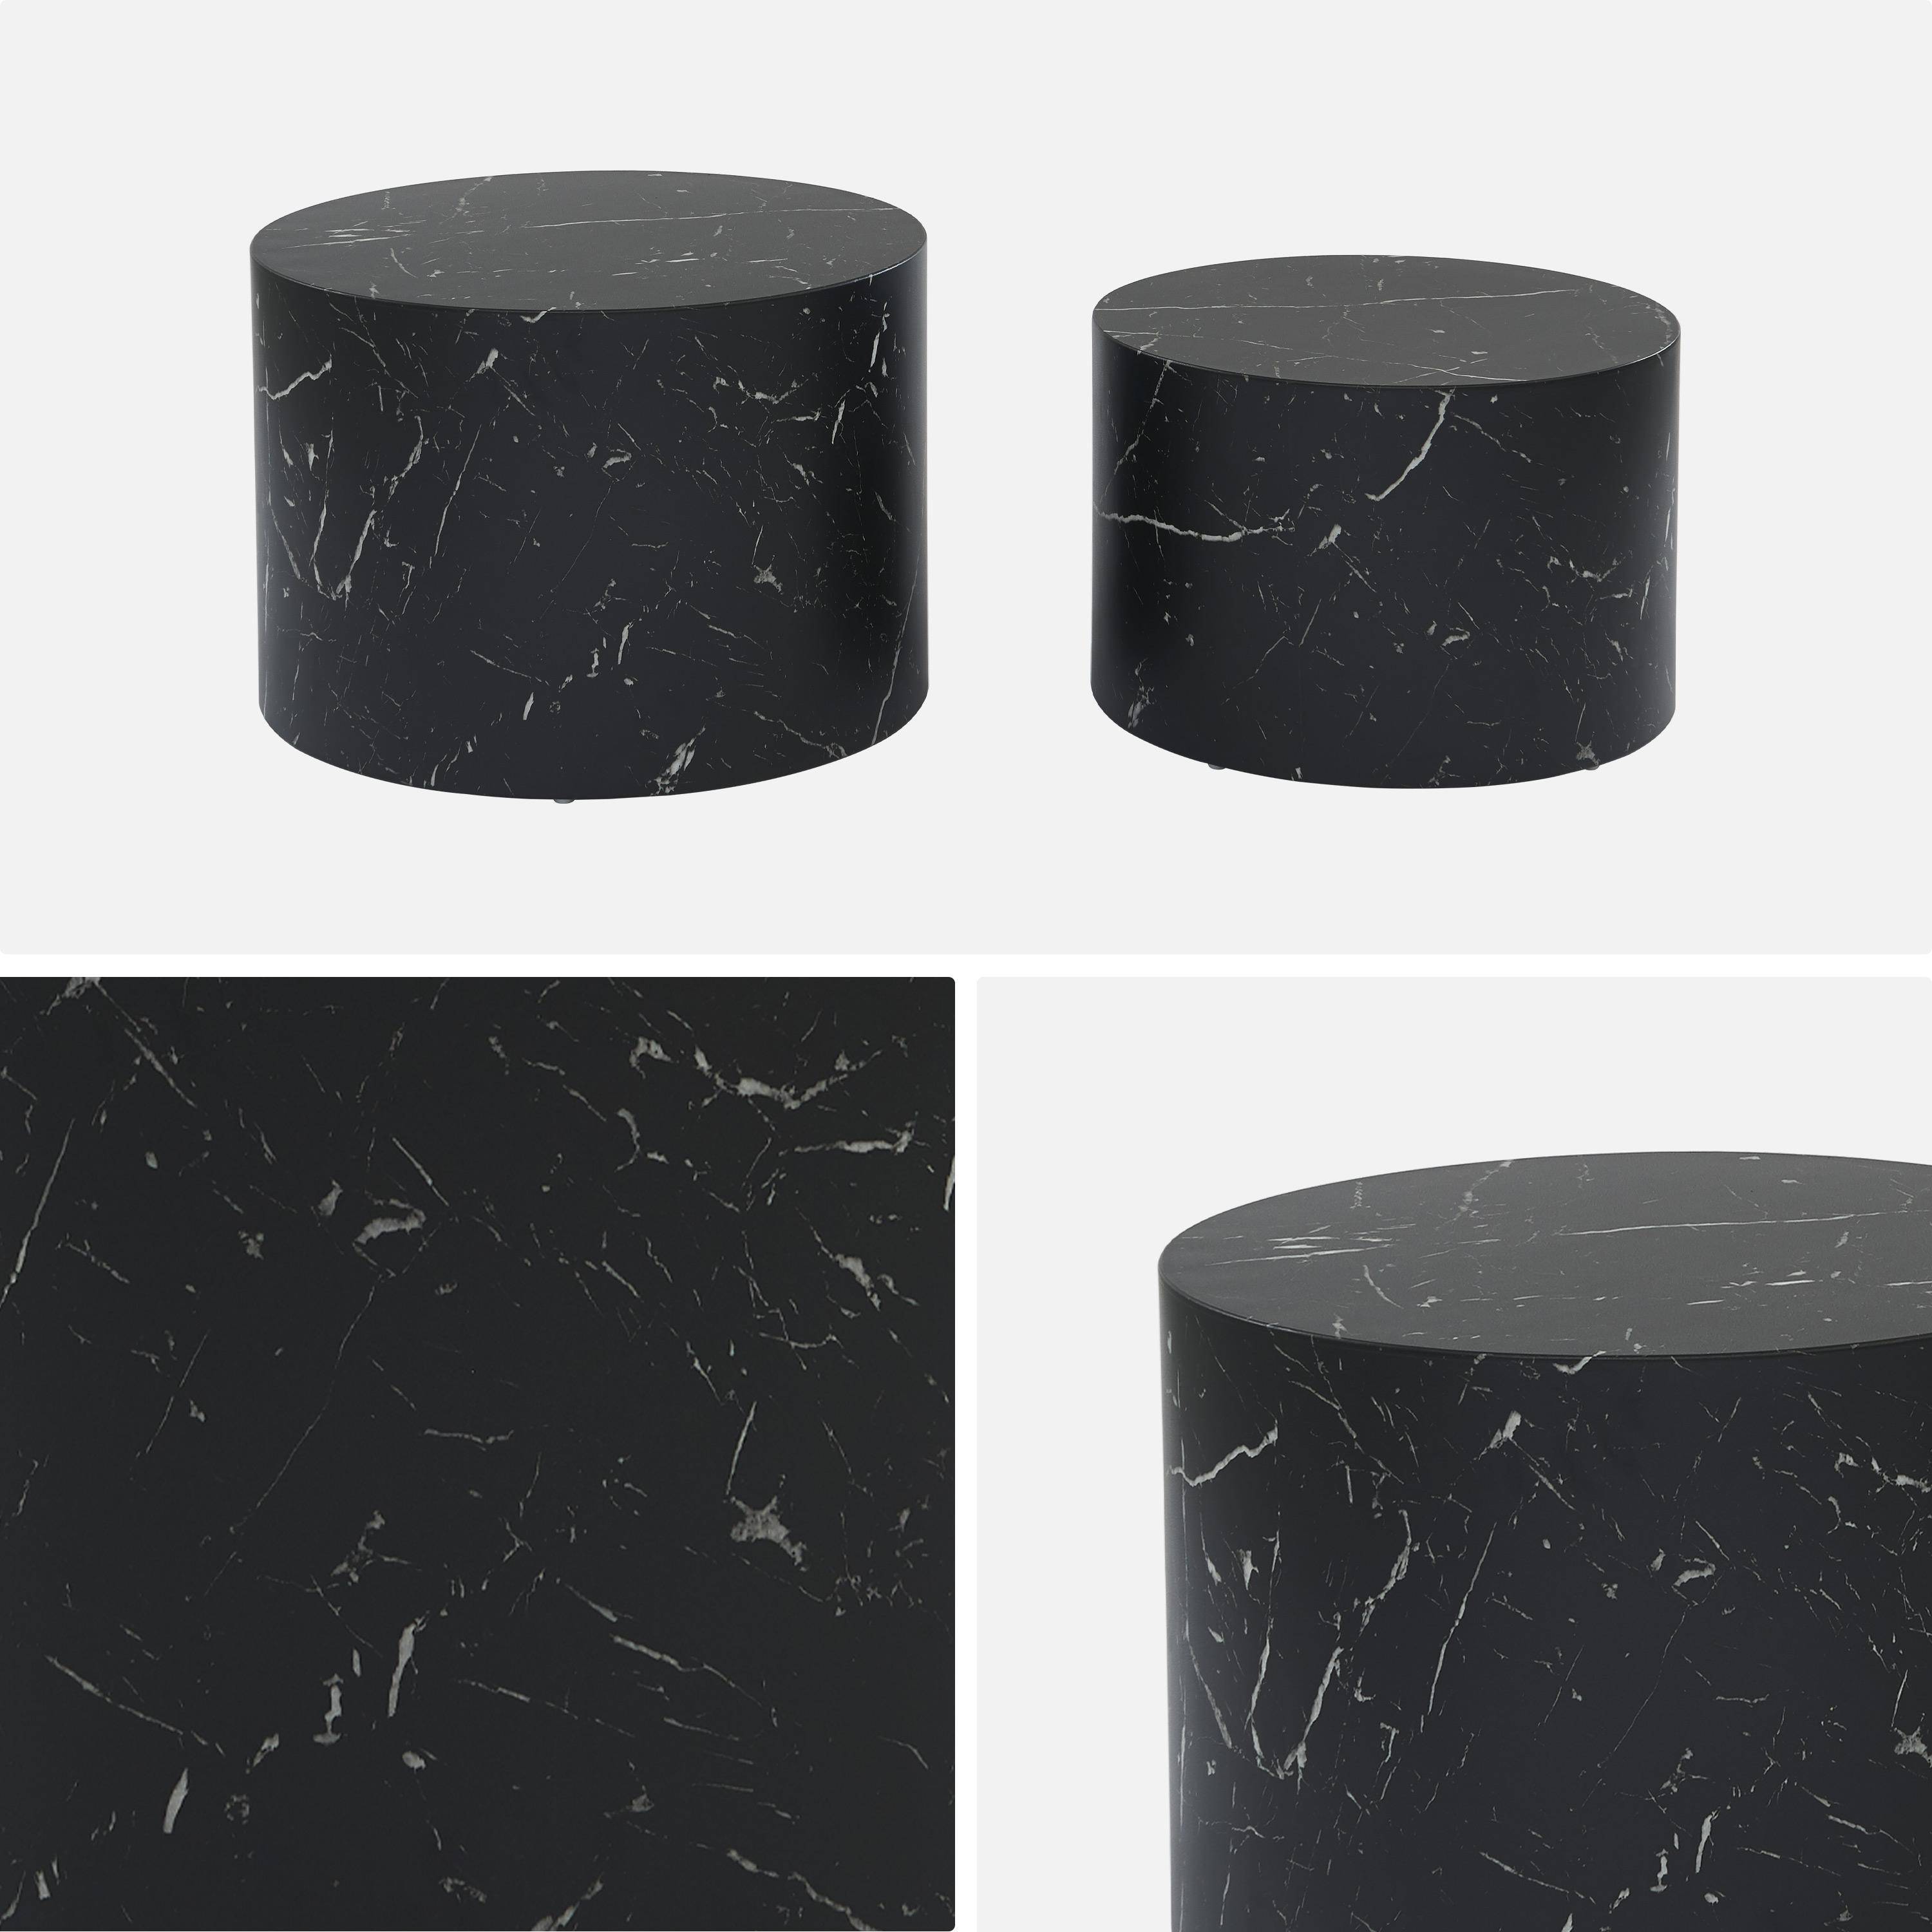 Lote de 2 mesas de centro redondas PAROS, efecto mármol negro, mesas nido Ø58 x H 40cm / Ø50 x H 33cm,sweeek,Photo6